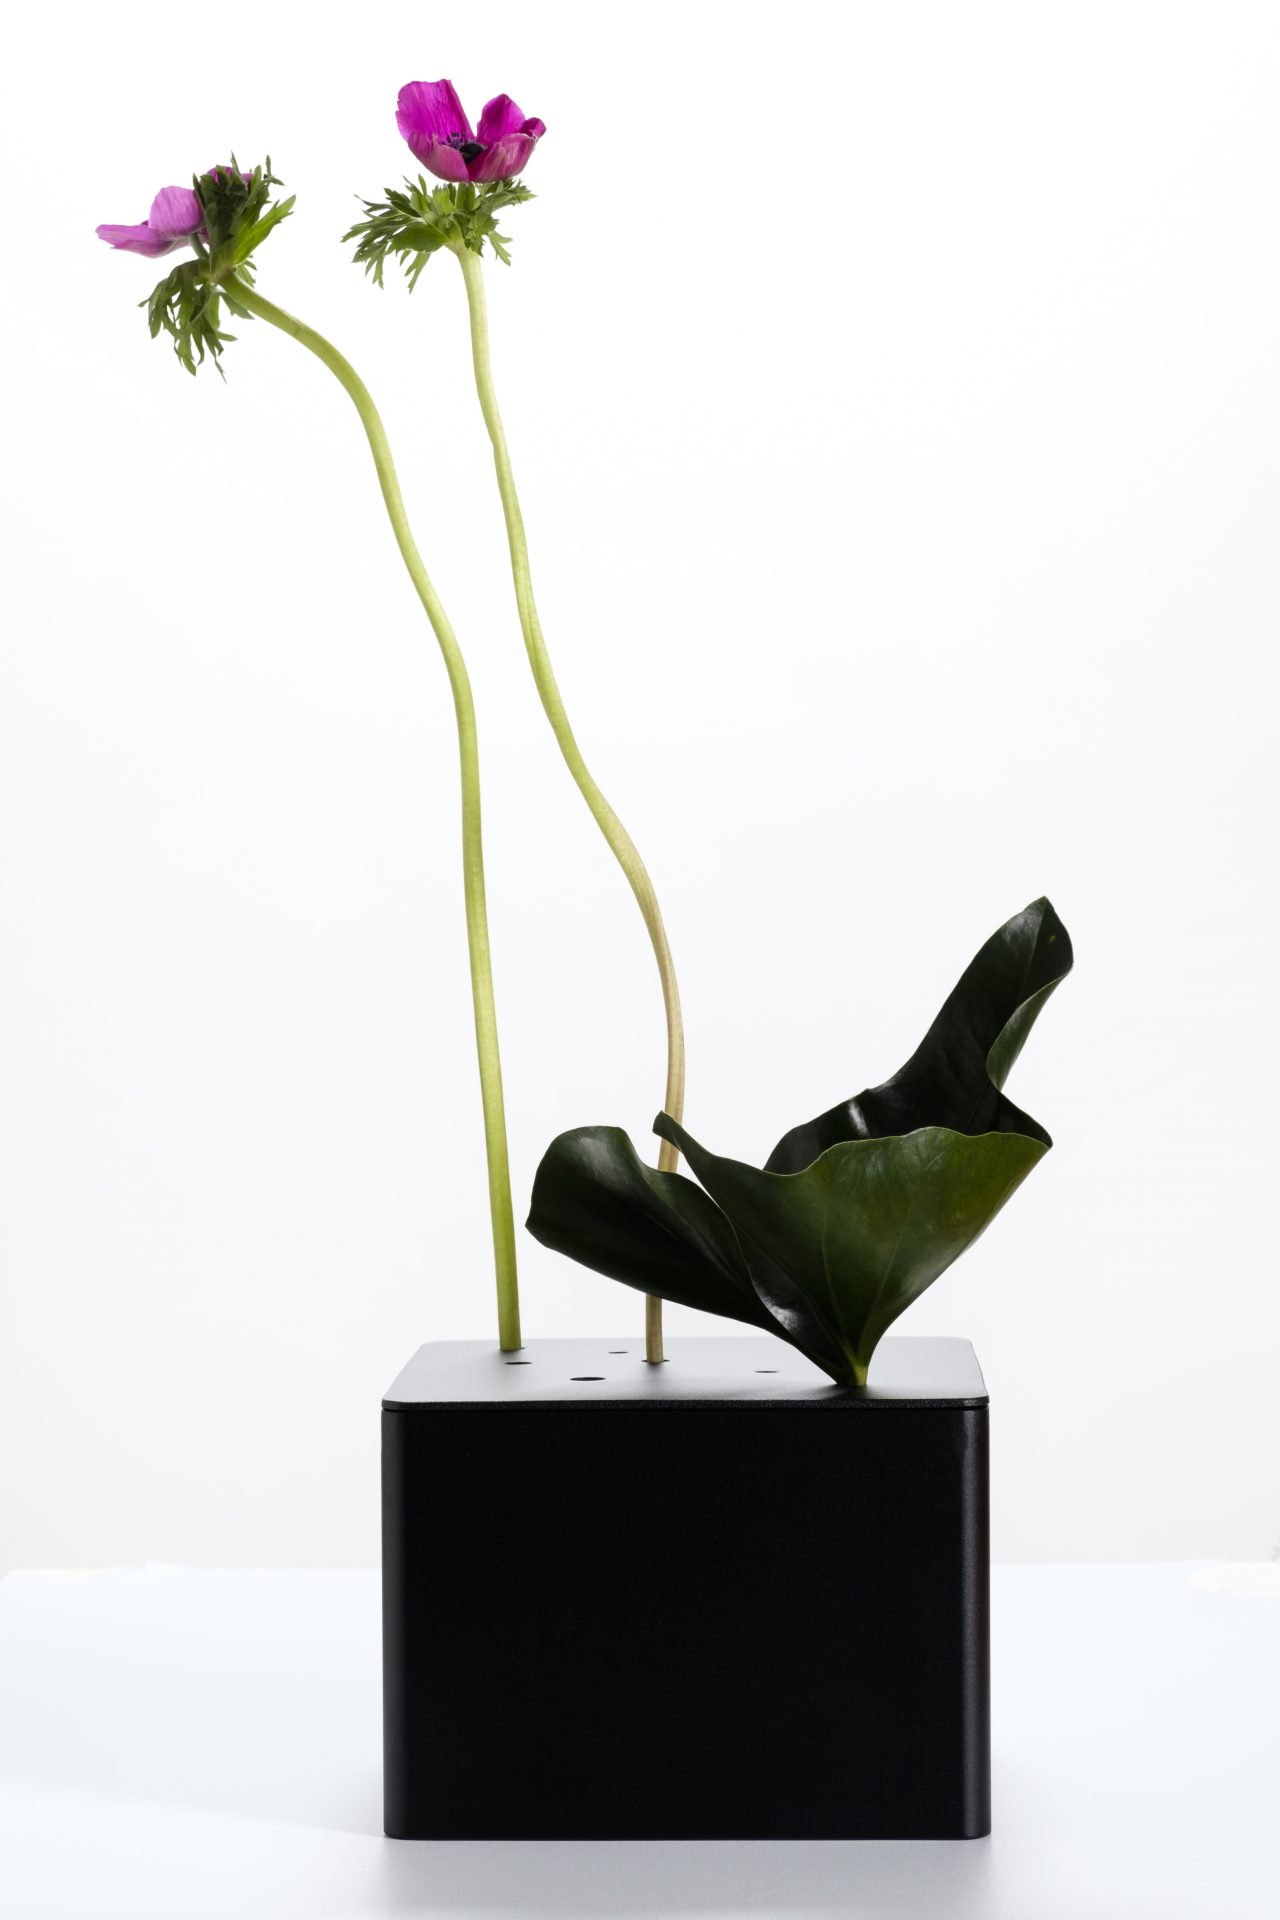 PROSPER flower vase by Anna Thorunn